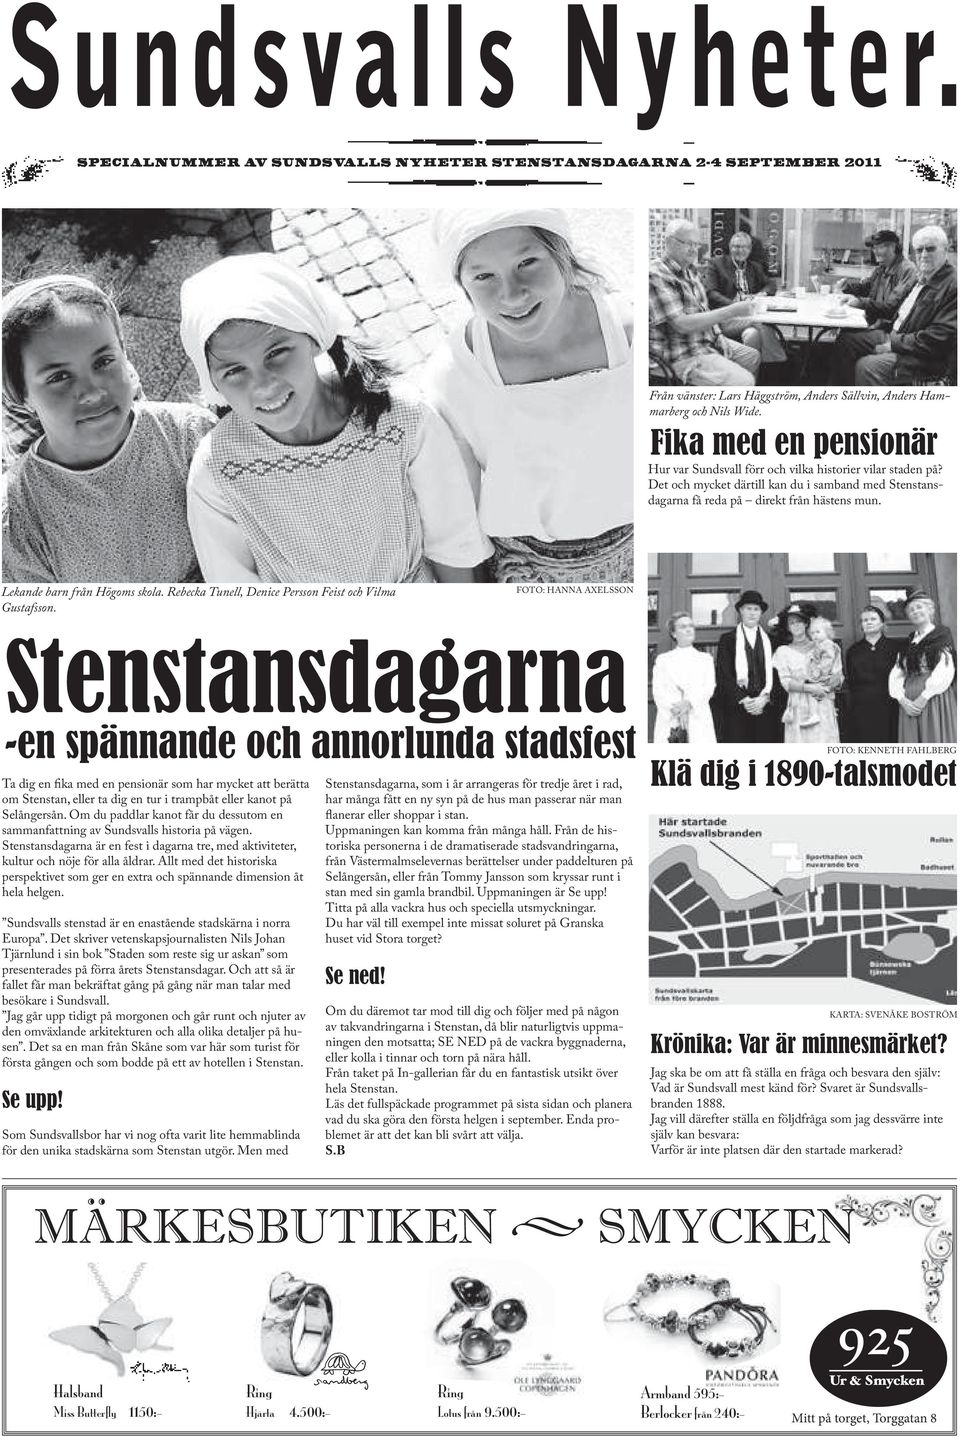 Lekande barn från Högoms skola. Rebecka Tunell, Denice Persson Feist och Vilma Gustafsson.